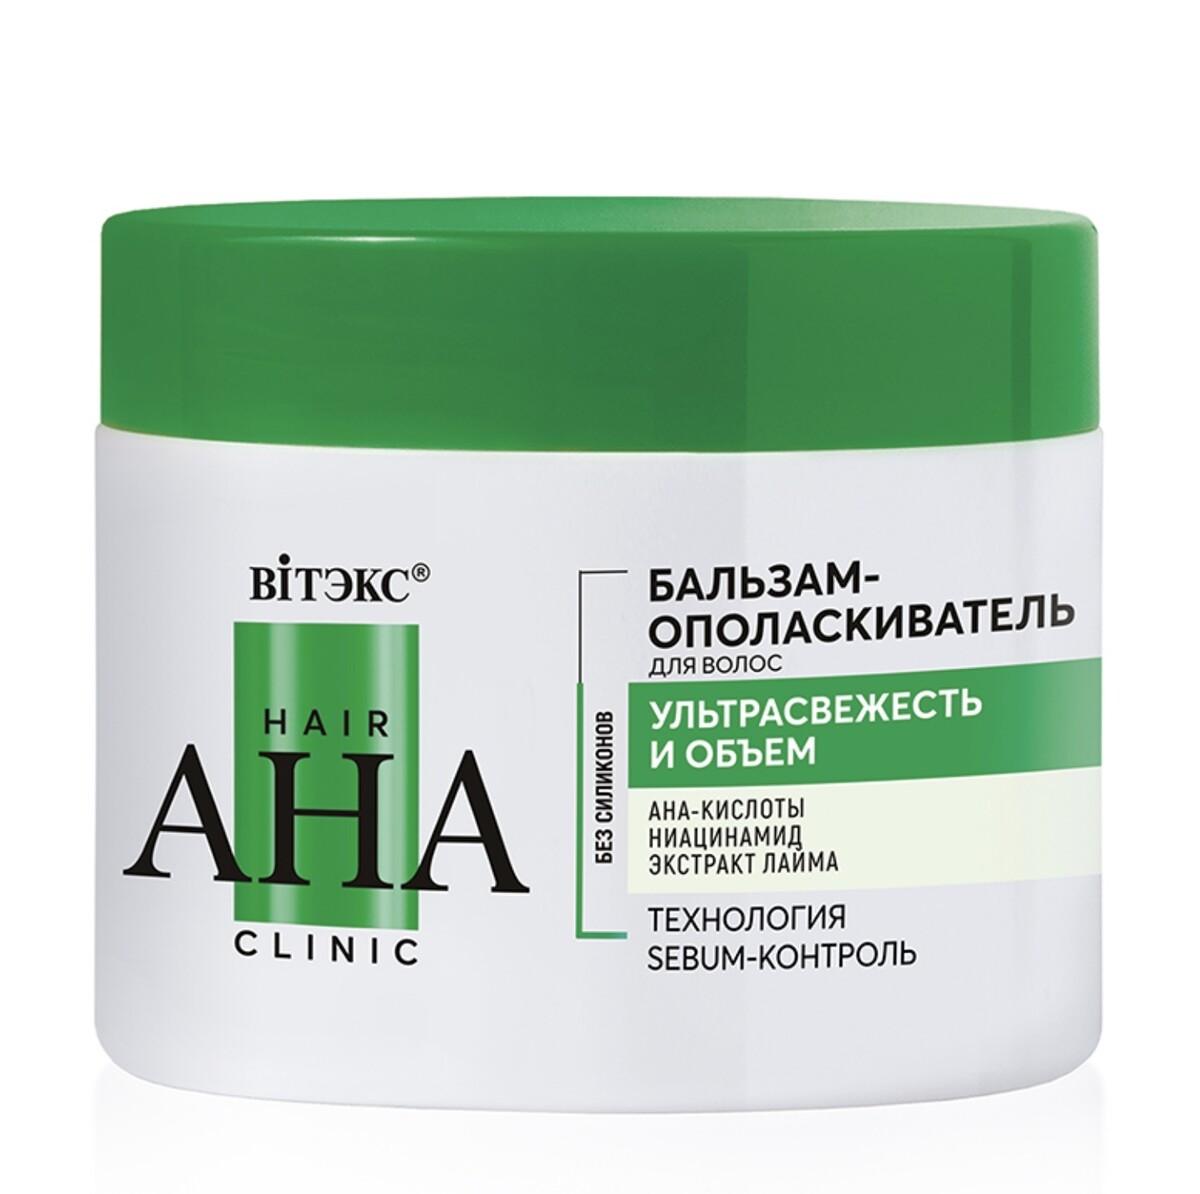 Hair aha clinic бальзам-ополаскиватель для волос ультрасвежесть и объем 300мл бальзам ополаскиватель для волос